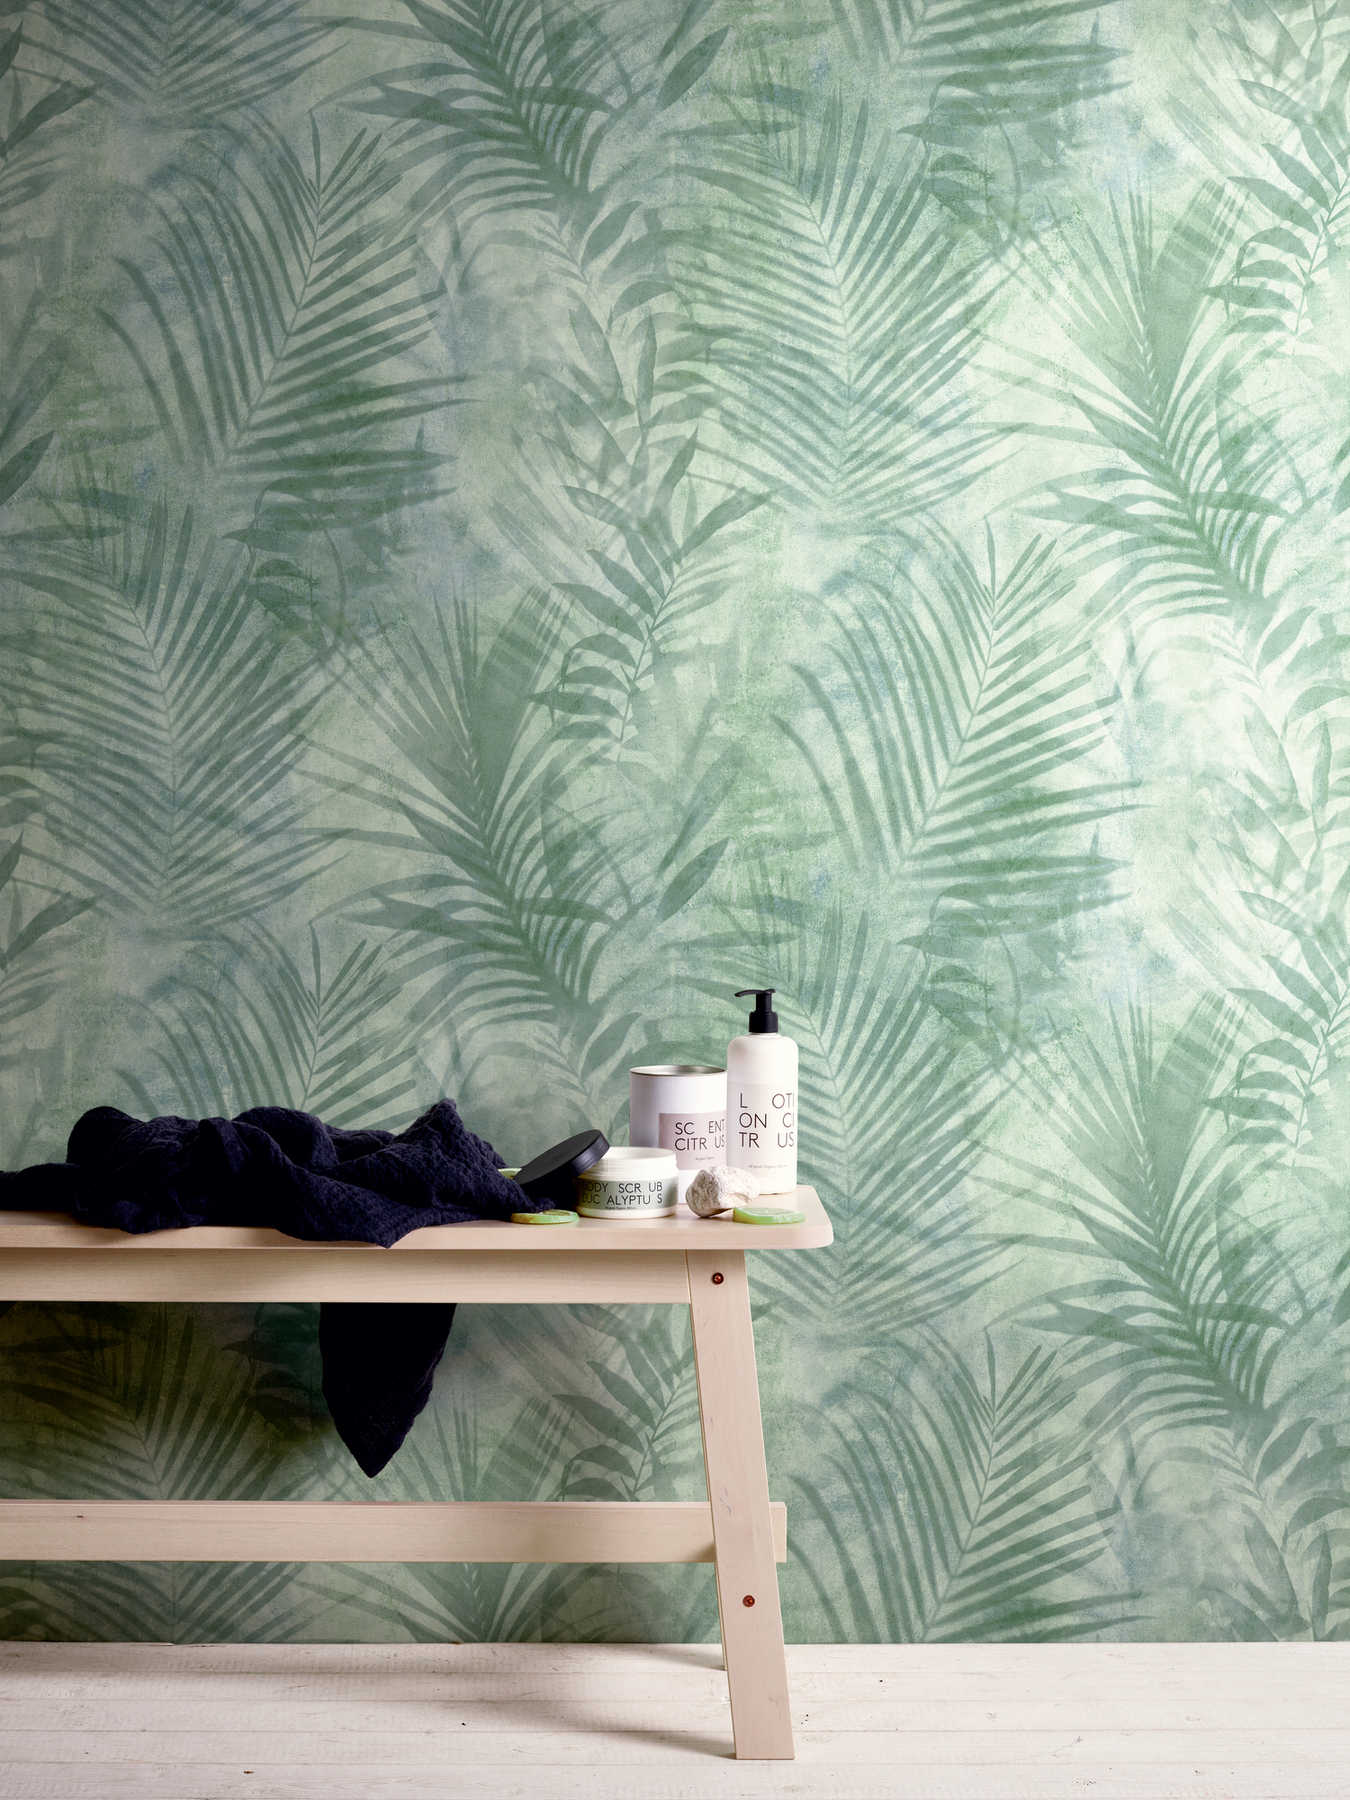             behang palmboom patroon in linnen look - groen, blauw, grijs
        